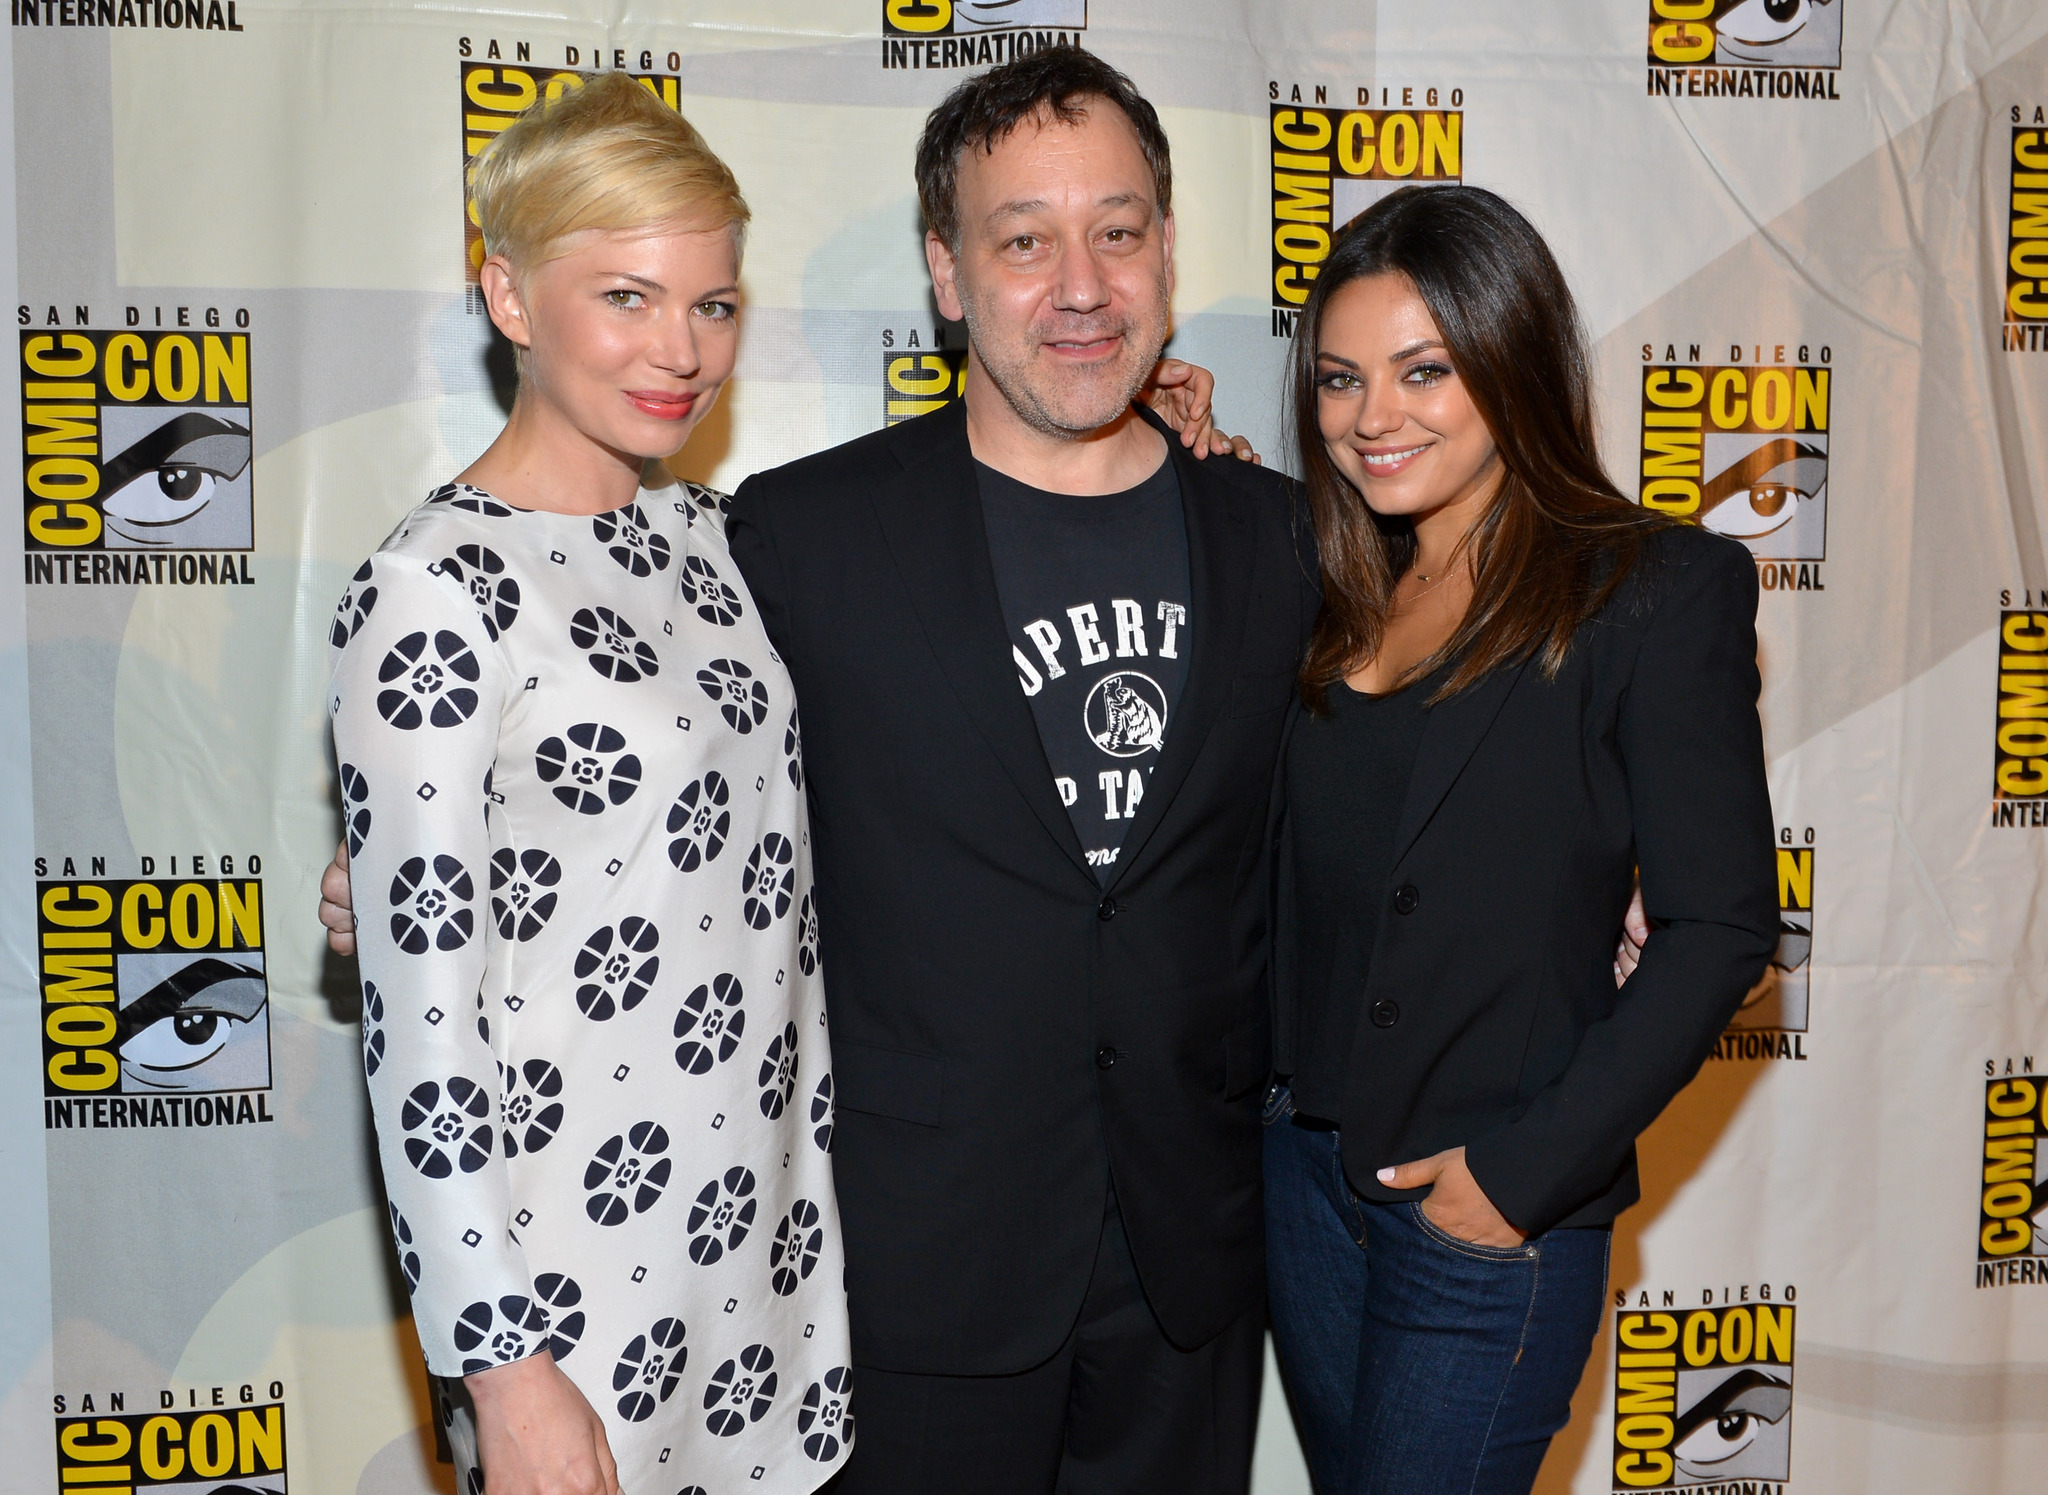 Sam Raimi, Mila Kunis and Michelle Williams at event of Ozas: didis ir galingas (2013)